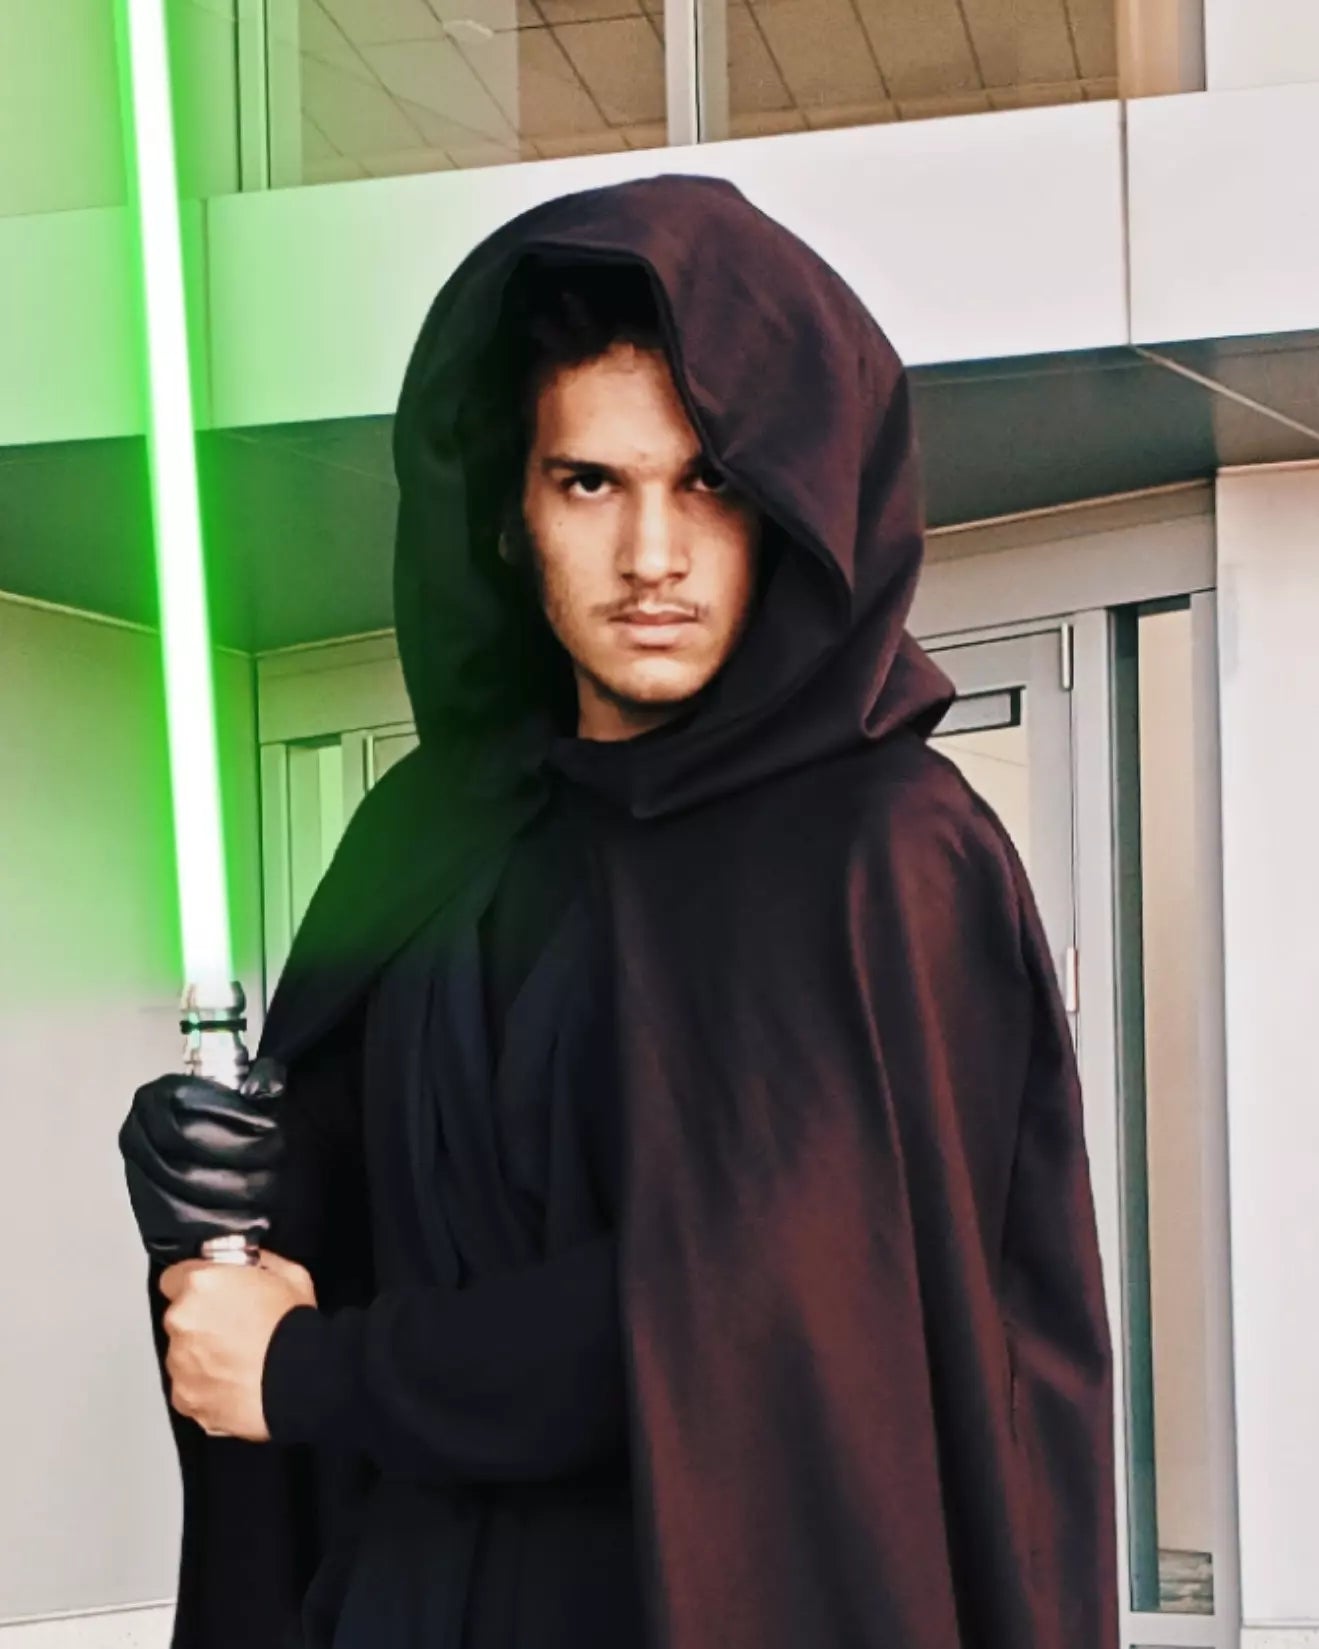 Luke Skywalker costume set